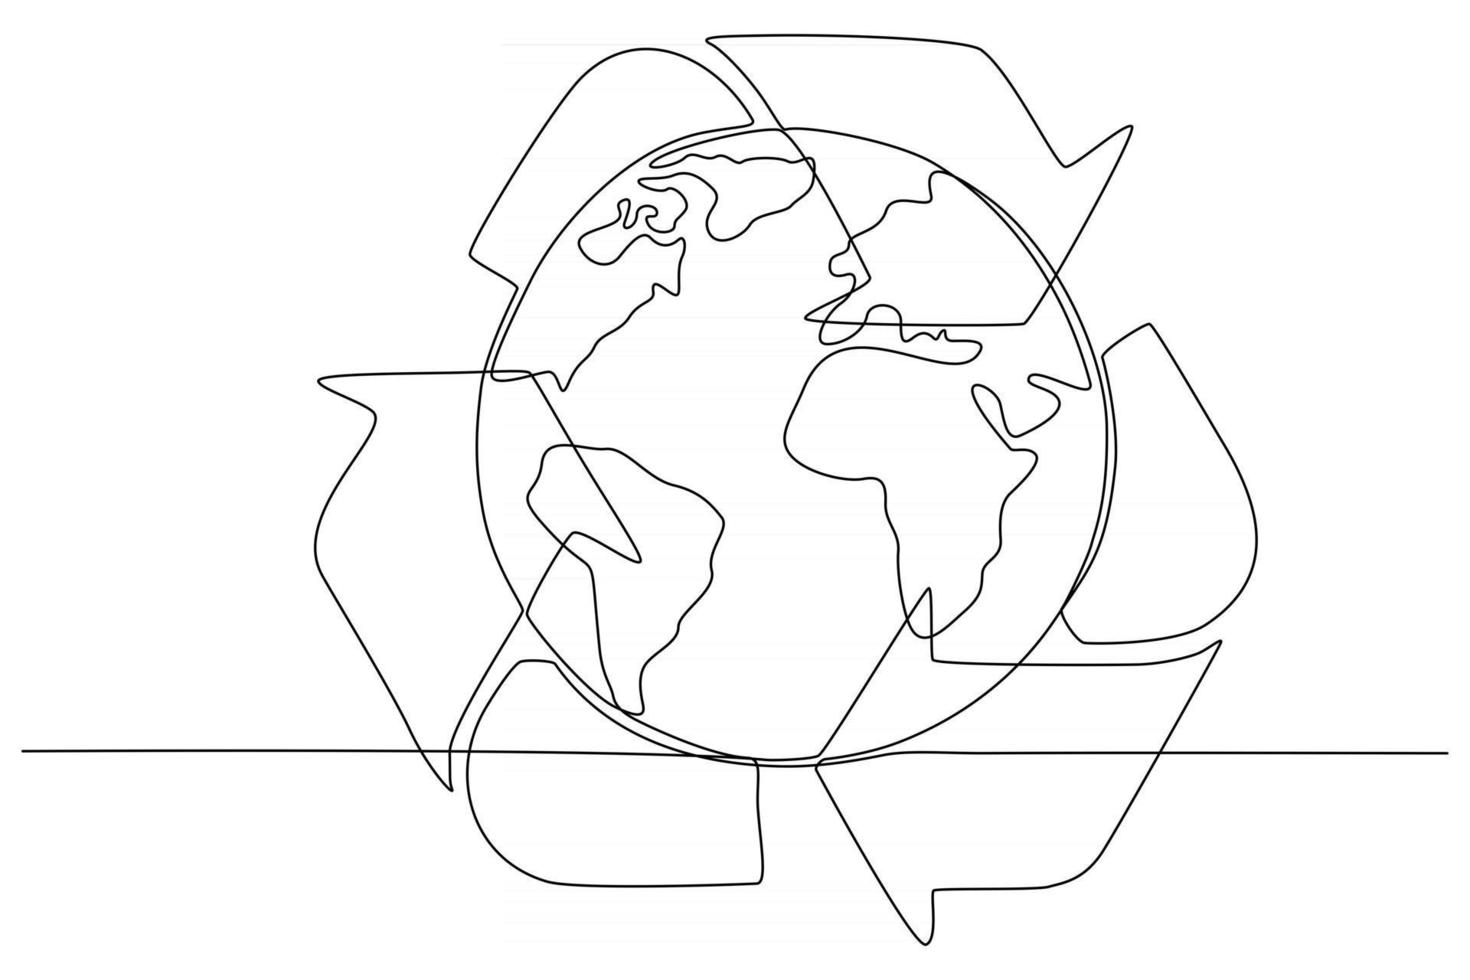 disegno a tratteggio continuo della terra con illustrazione vettoriale del segno del cestino